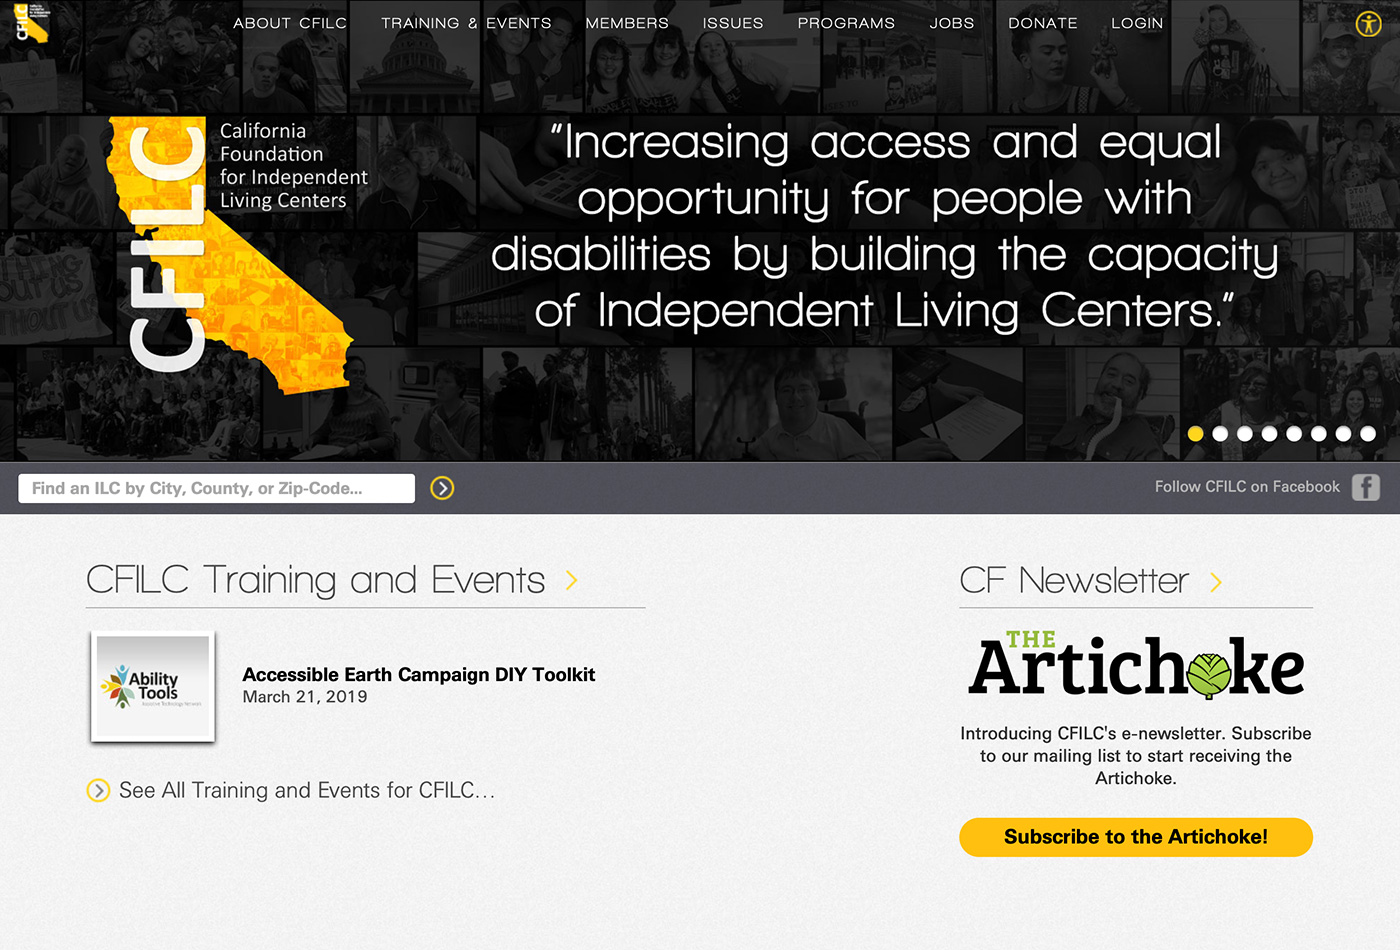 Screenshot of the CFILC website.